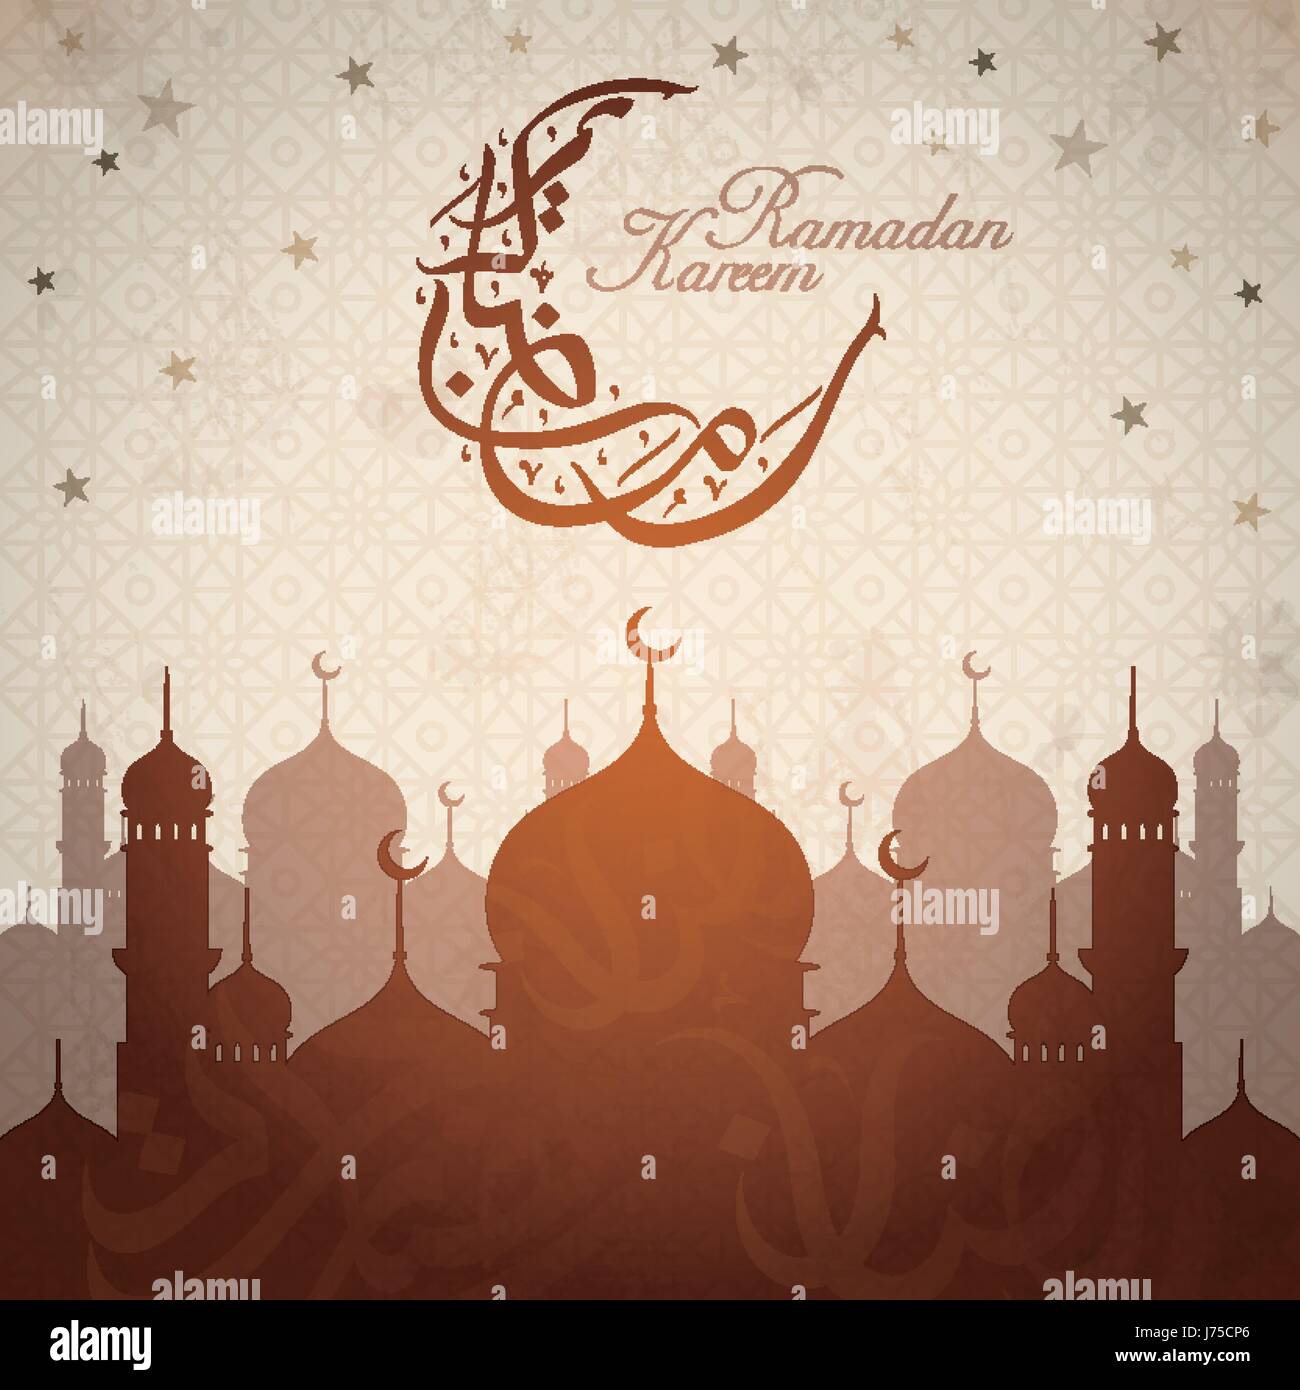 Arabische Kalligraphie-Design für Ramadan Kareem mit braunen Moschee Silhouetten Stock Vektor